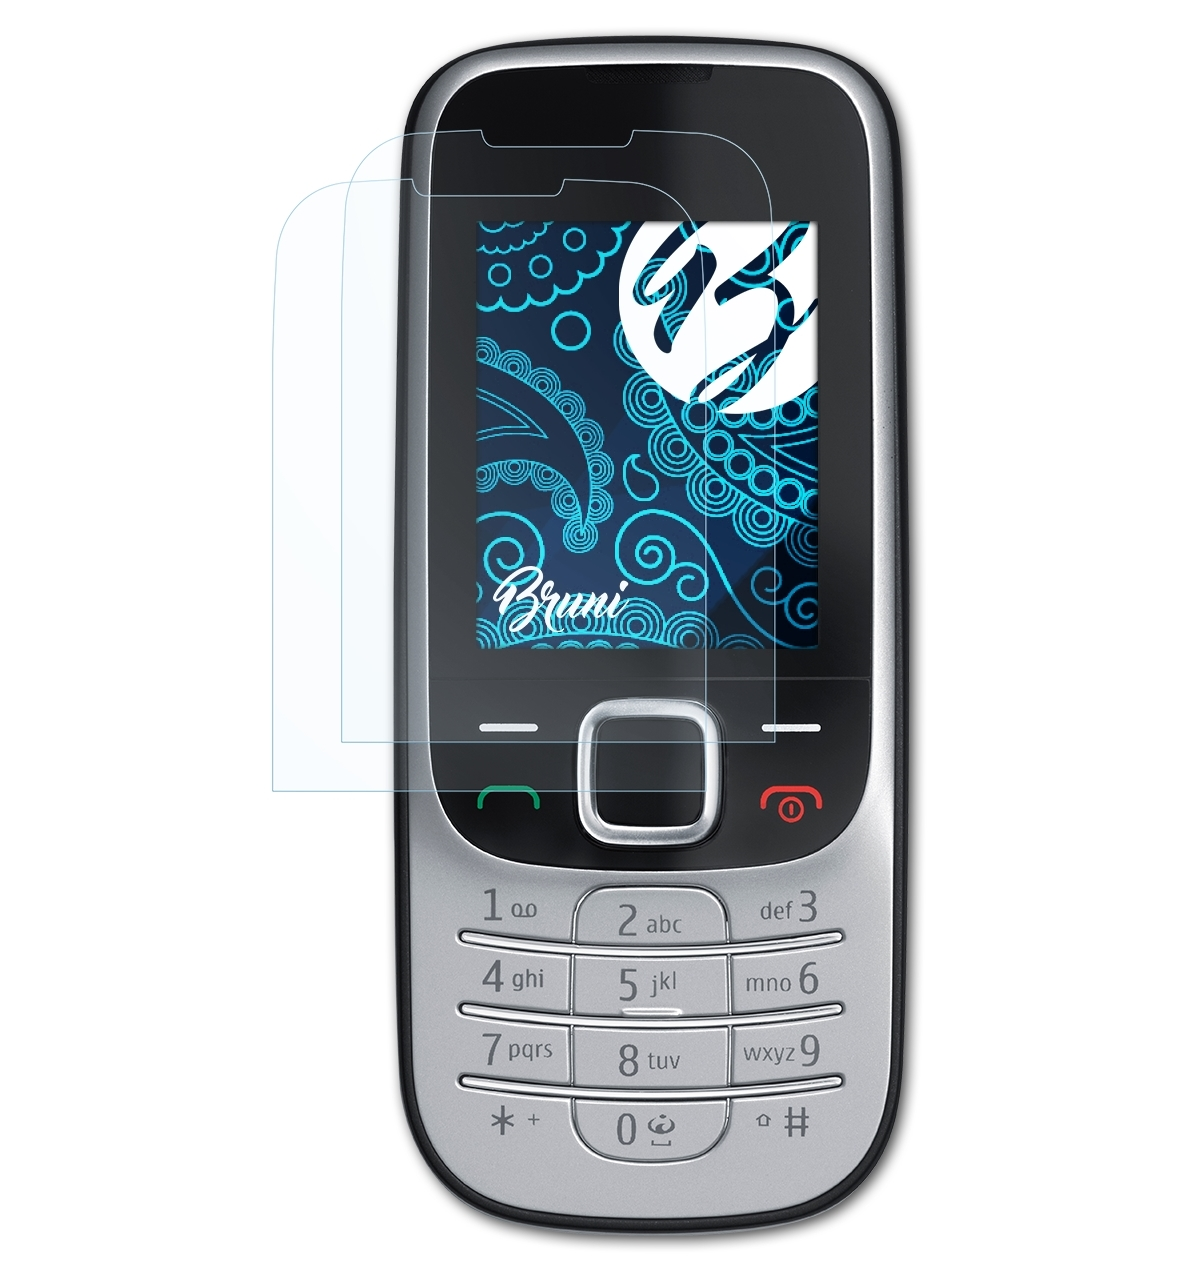 BRUNI 2x Basics-Clear Schutzfolie(für Nokia Classic) 2330